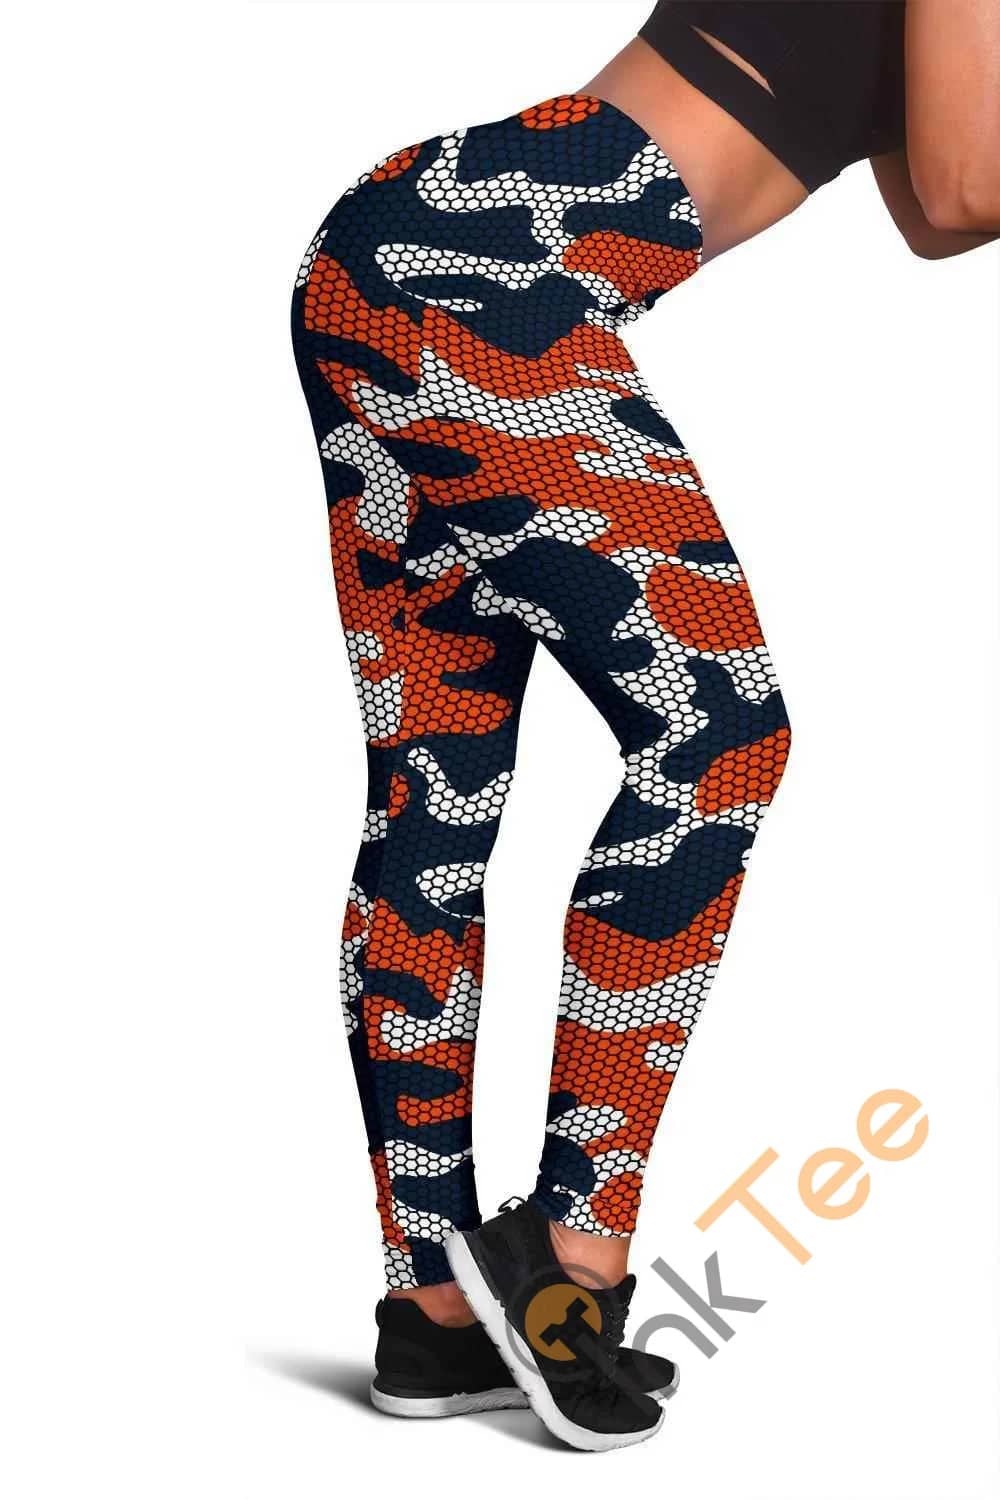 Denver Broncos Inspired Hex Camo 3D All Over Print For Yoga Fitness Fashion Women's Leggings